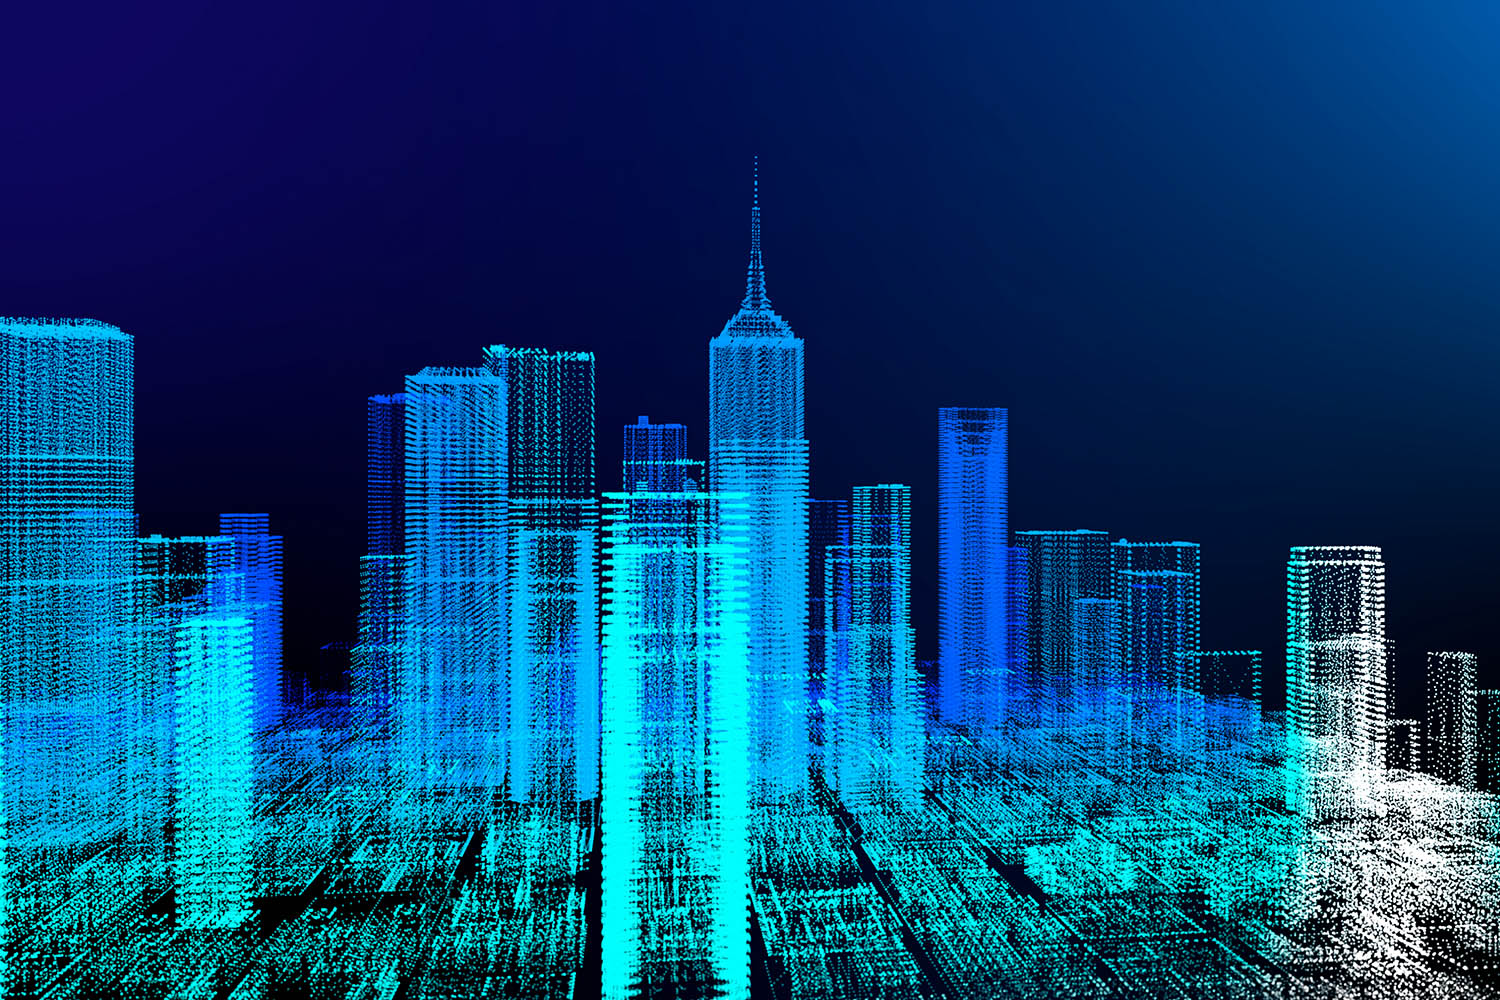 Representación gráfica de una ciudad digitalizada.